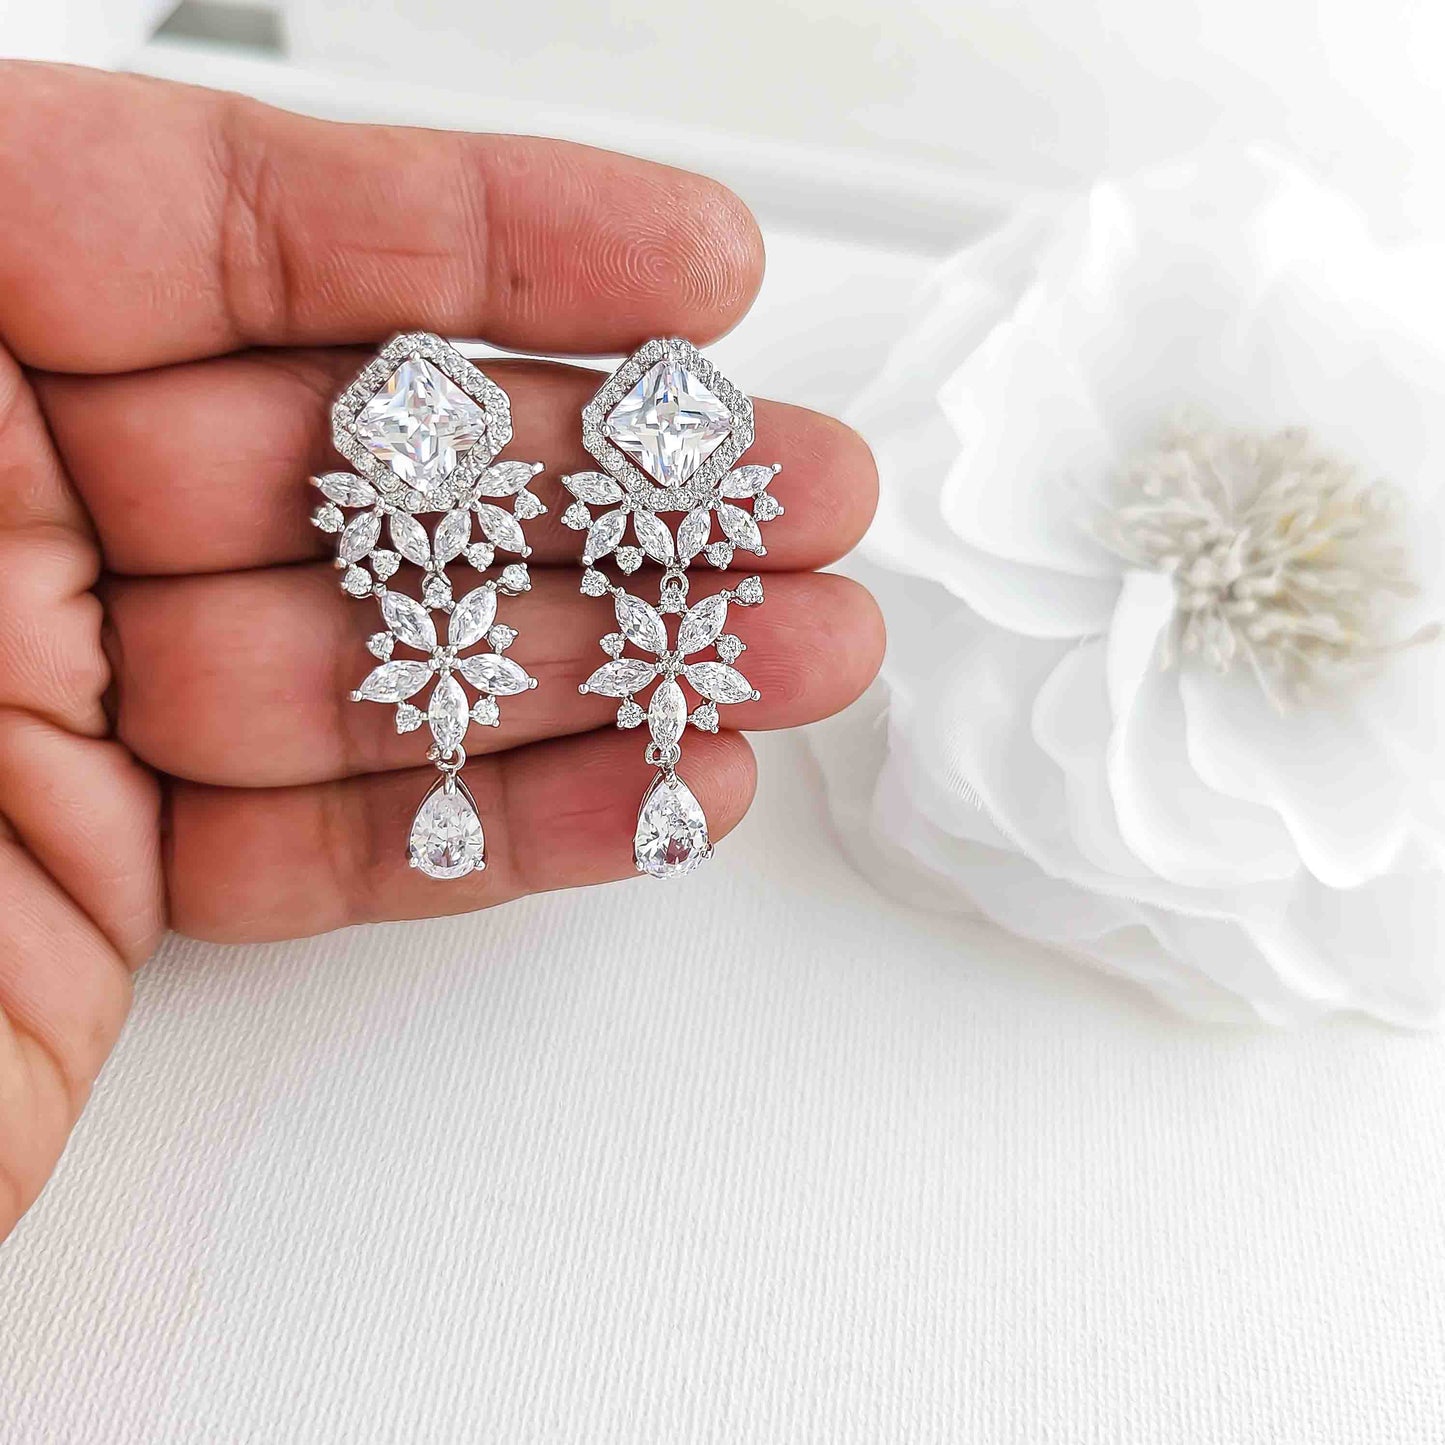 Wedding Drop Earrings-Lacie